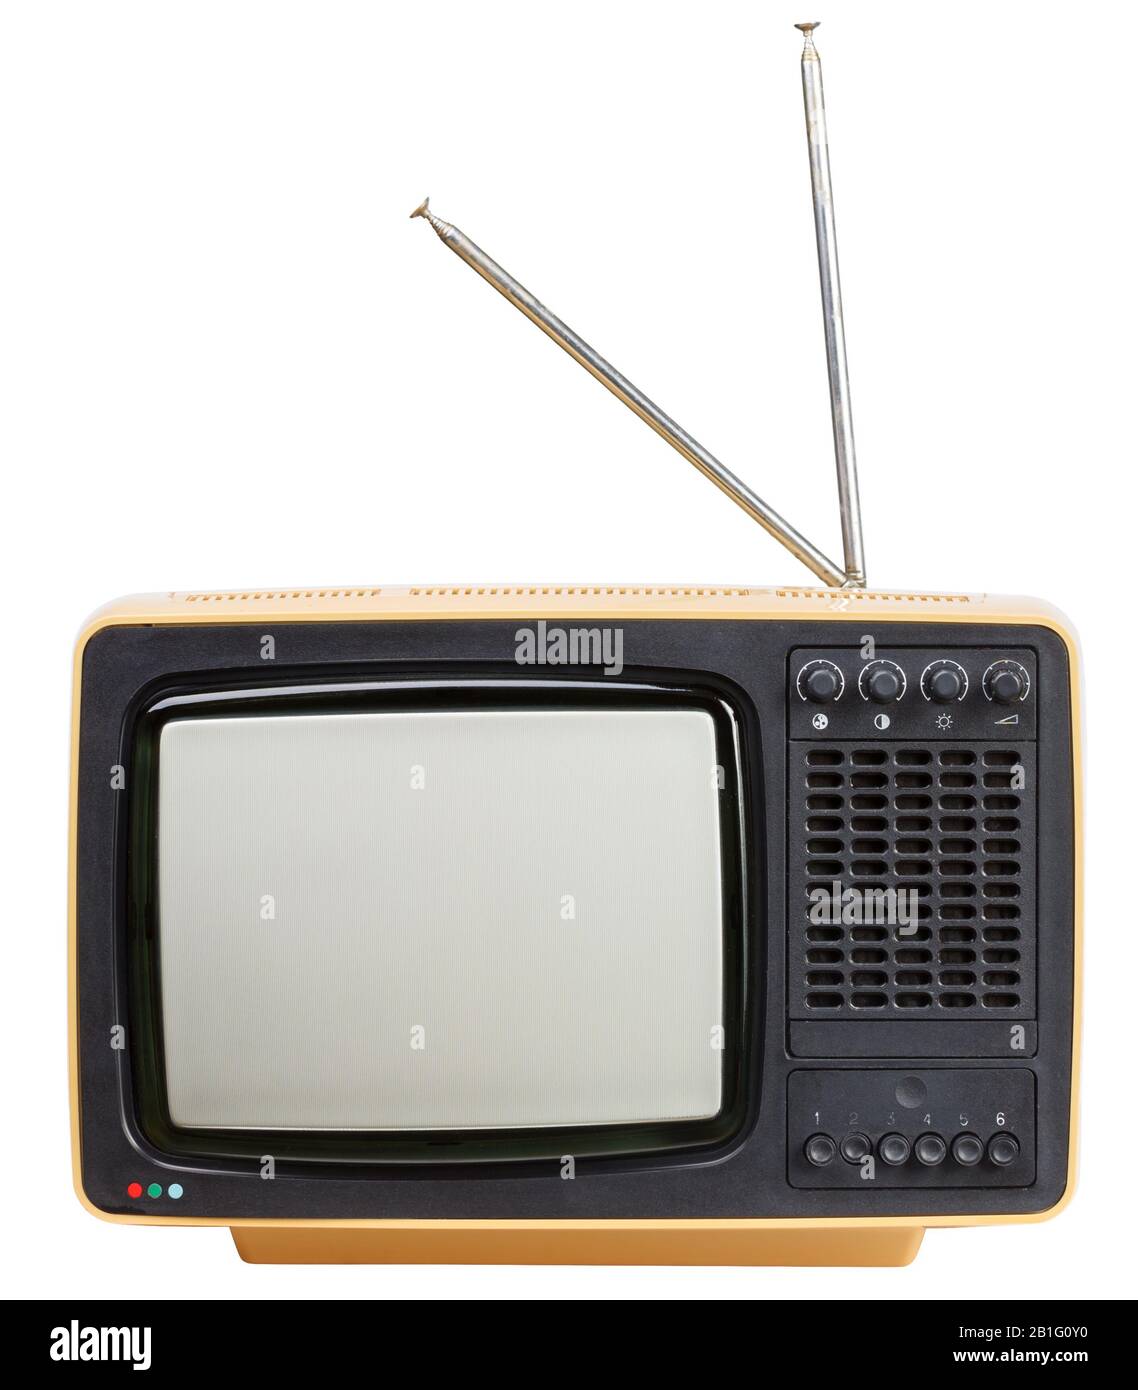 Gelber, tragbarer CRT-TV-Receiver im Vintage-Stil mit auf weißem Hintergrund isolierten Antennen. Retro-Technologie-Konzept Stockfoto